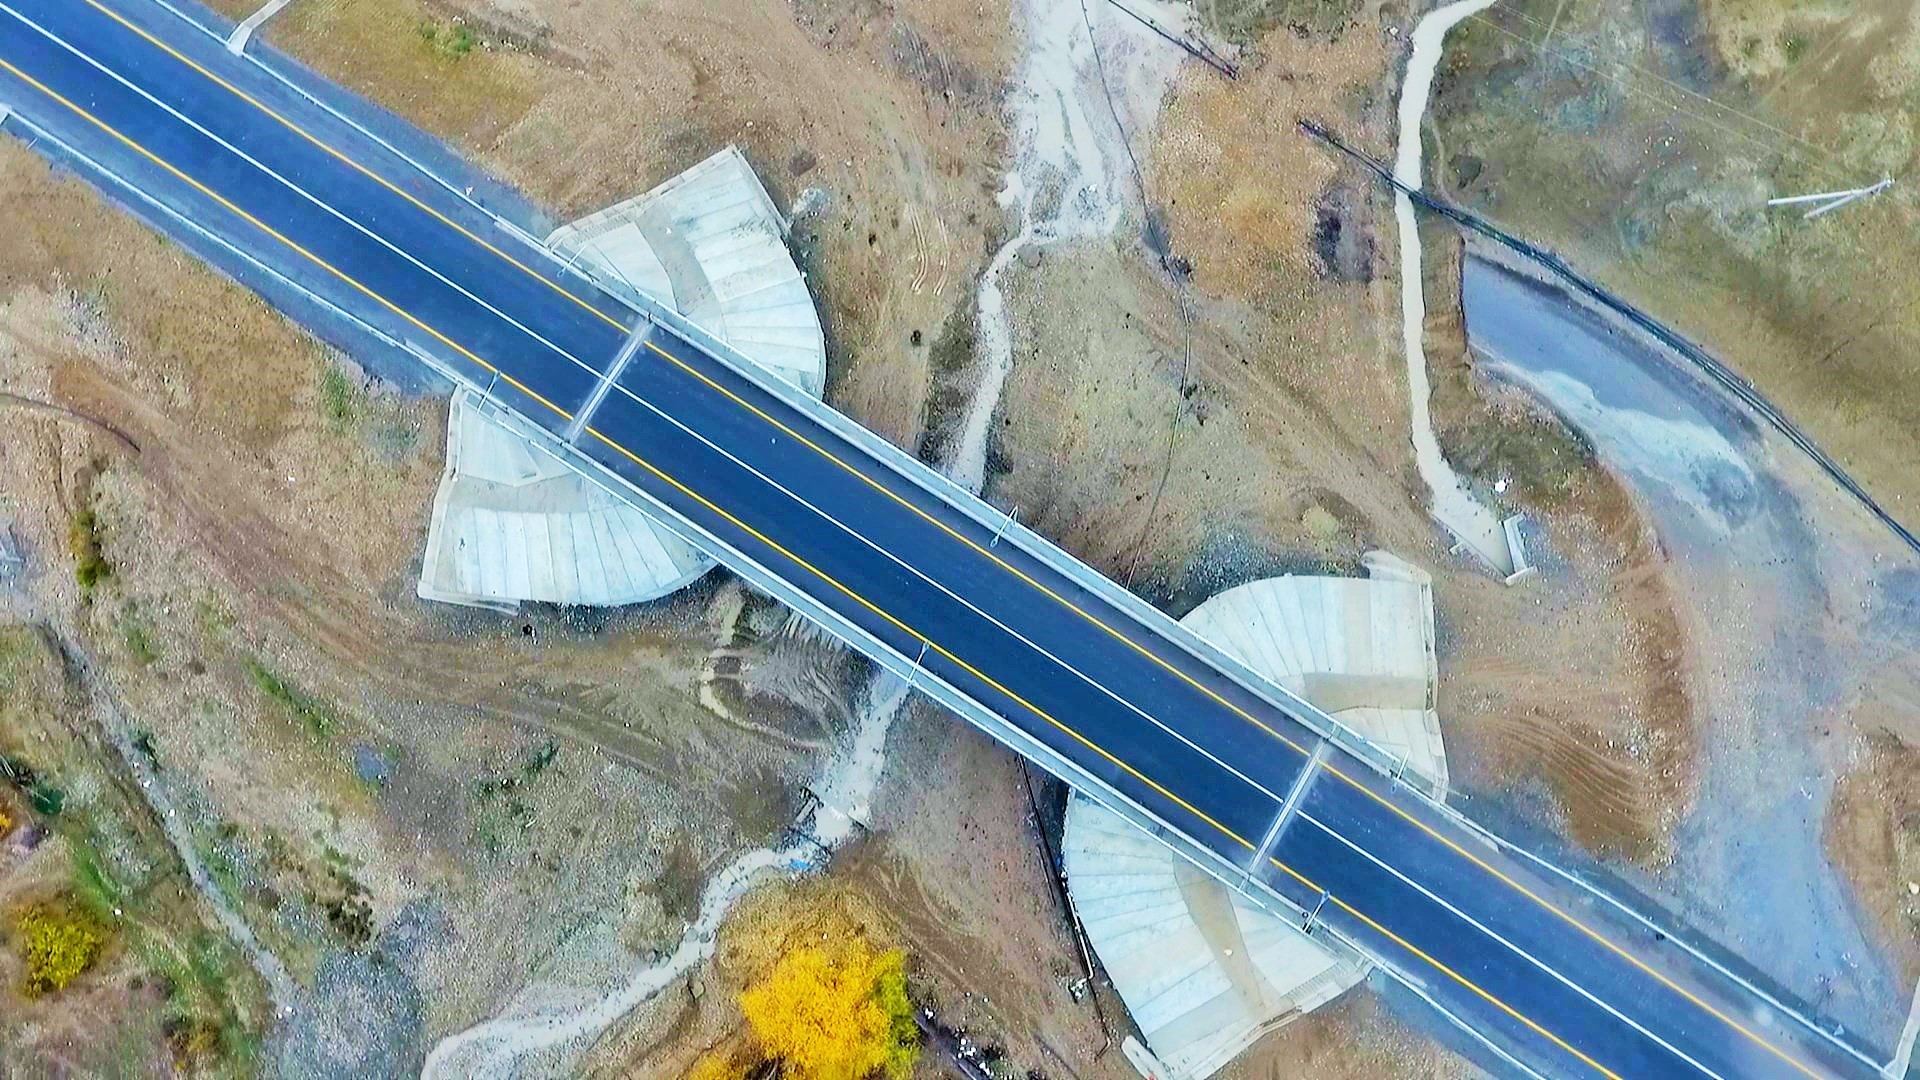 Завершено строительство двух автомобильных дорог республиканского значения (ФОТО)